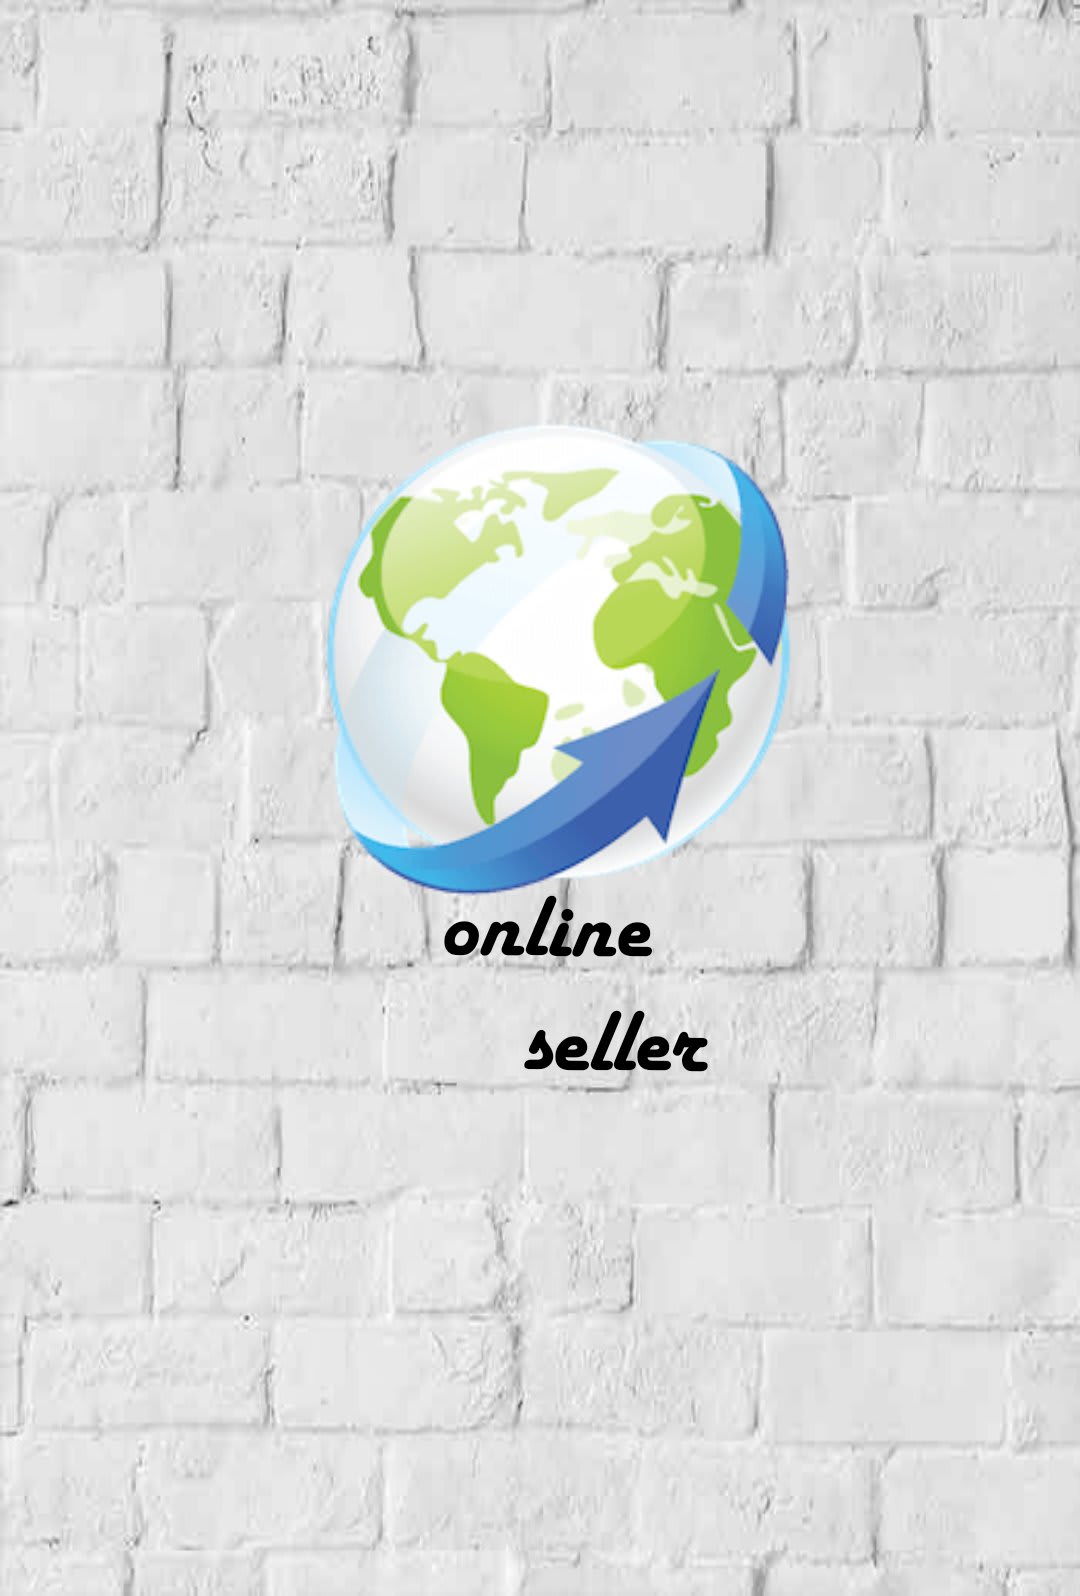 Online seller